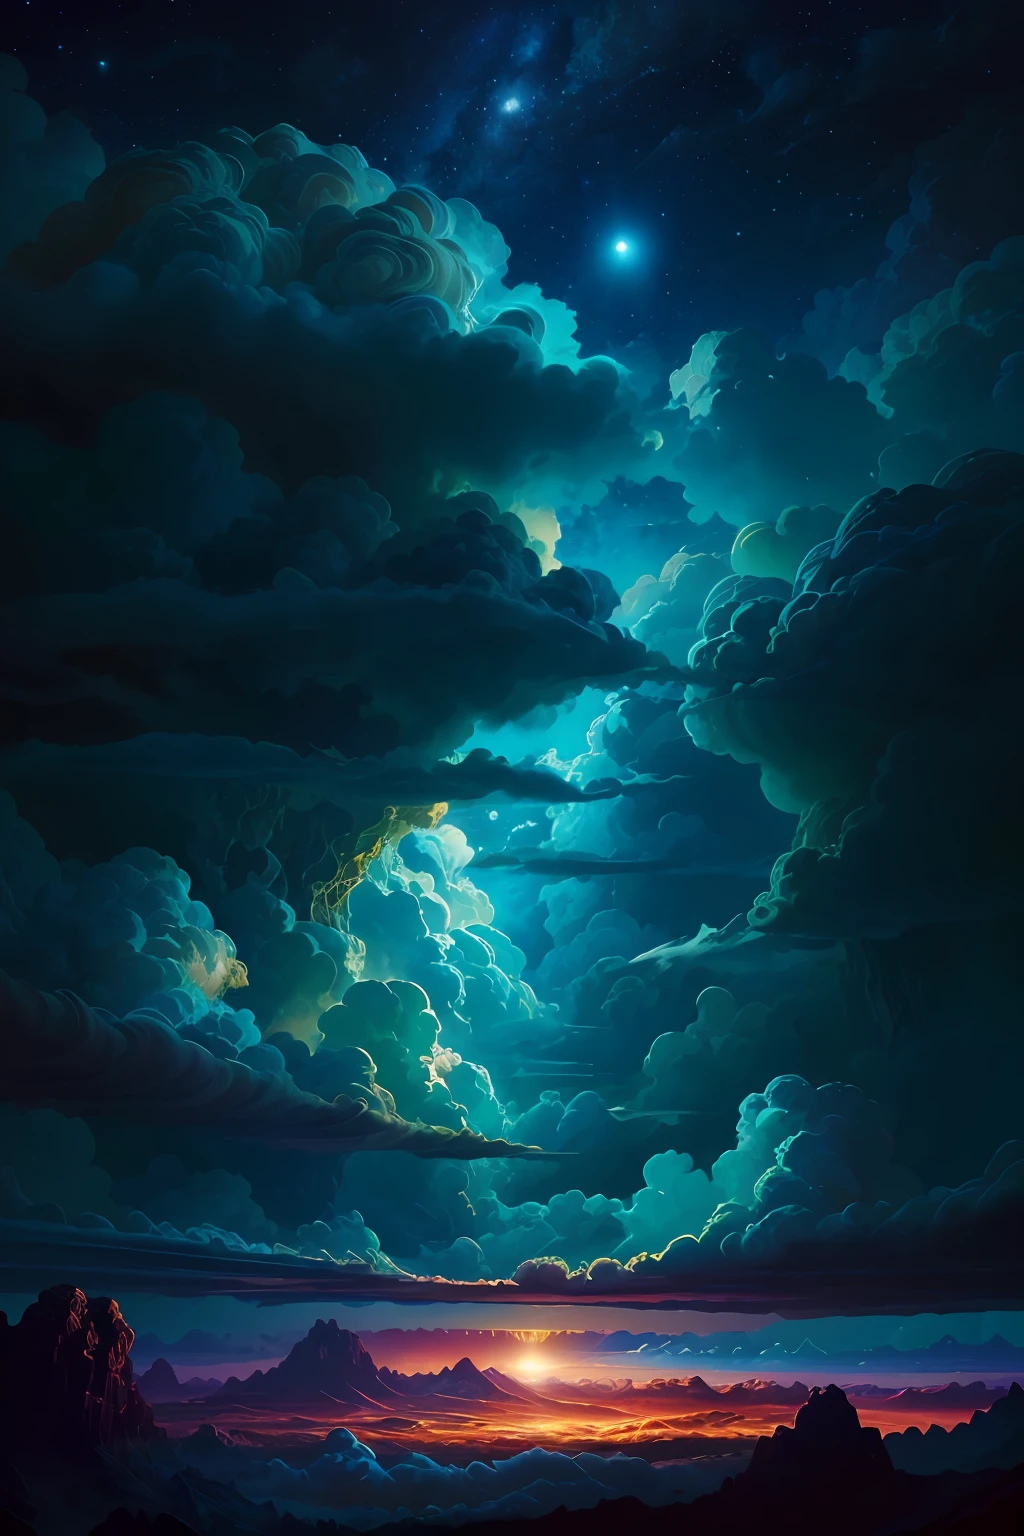 목성 구름 그림 - Dan Mumford, 외계 풍경과 식물, 서사시적인 장면, 많은 소용돌이 구름, 높은 노출, 매우 상세한, 현실적인, 생기 넘치는 블루 틴트 색상, UHD